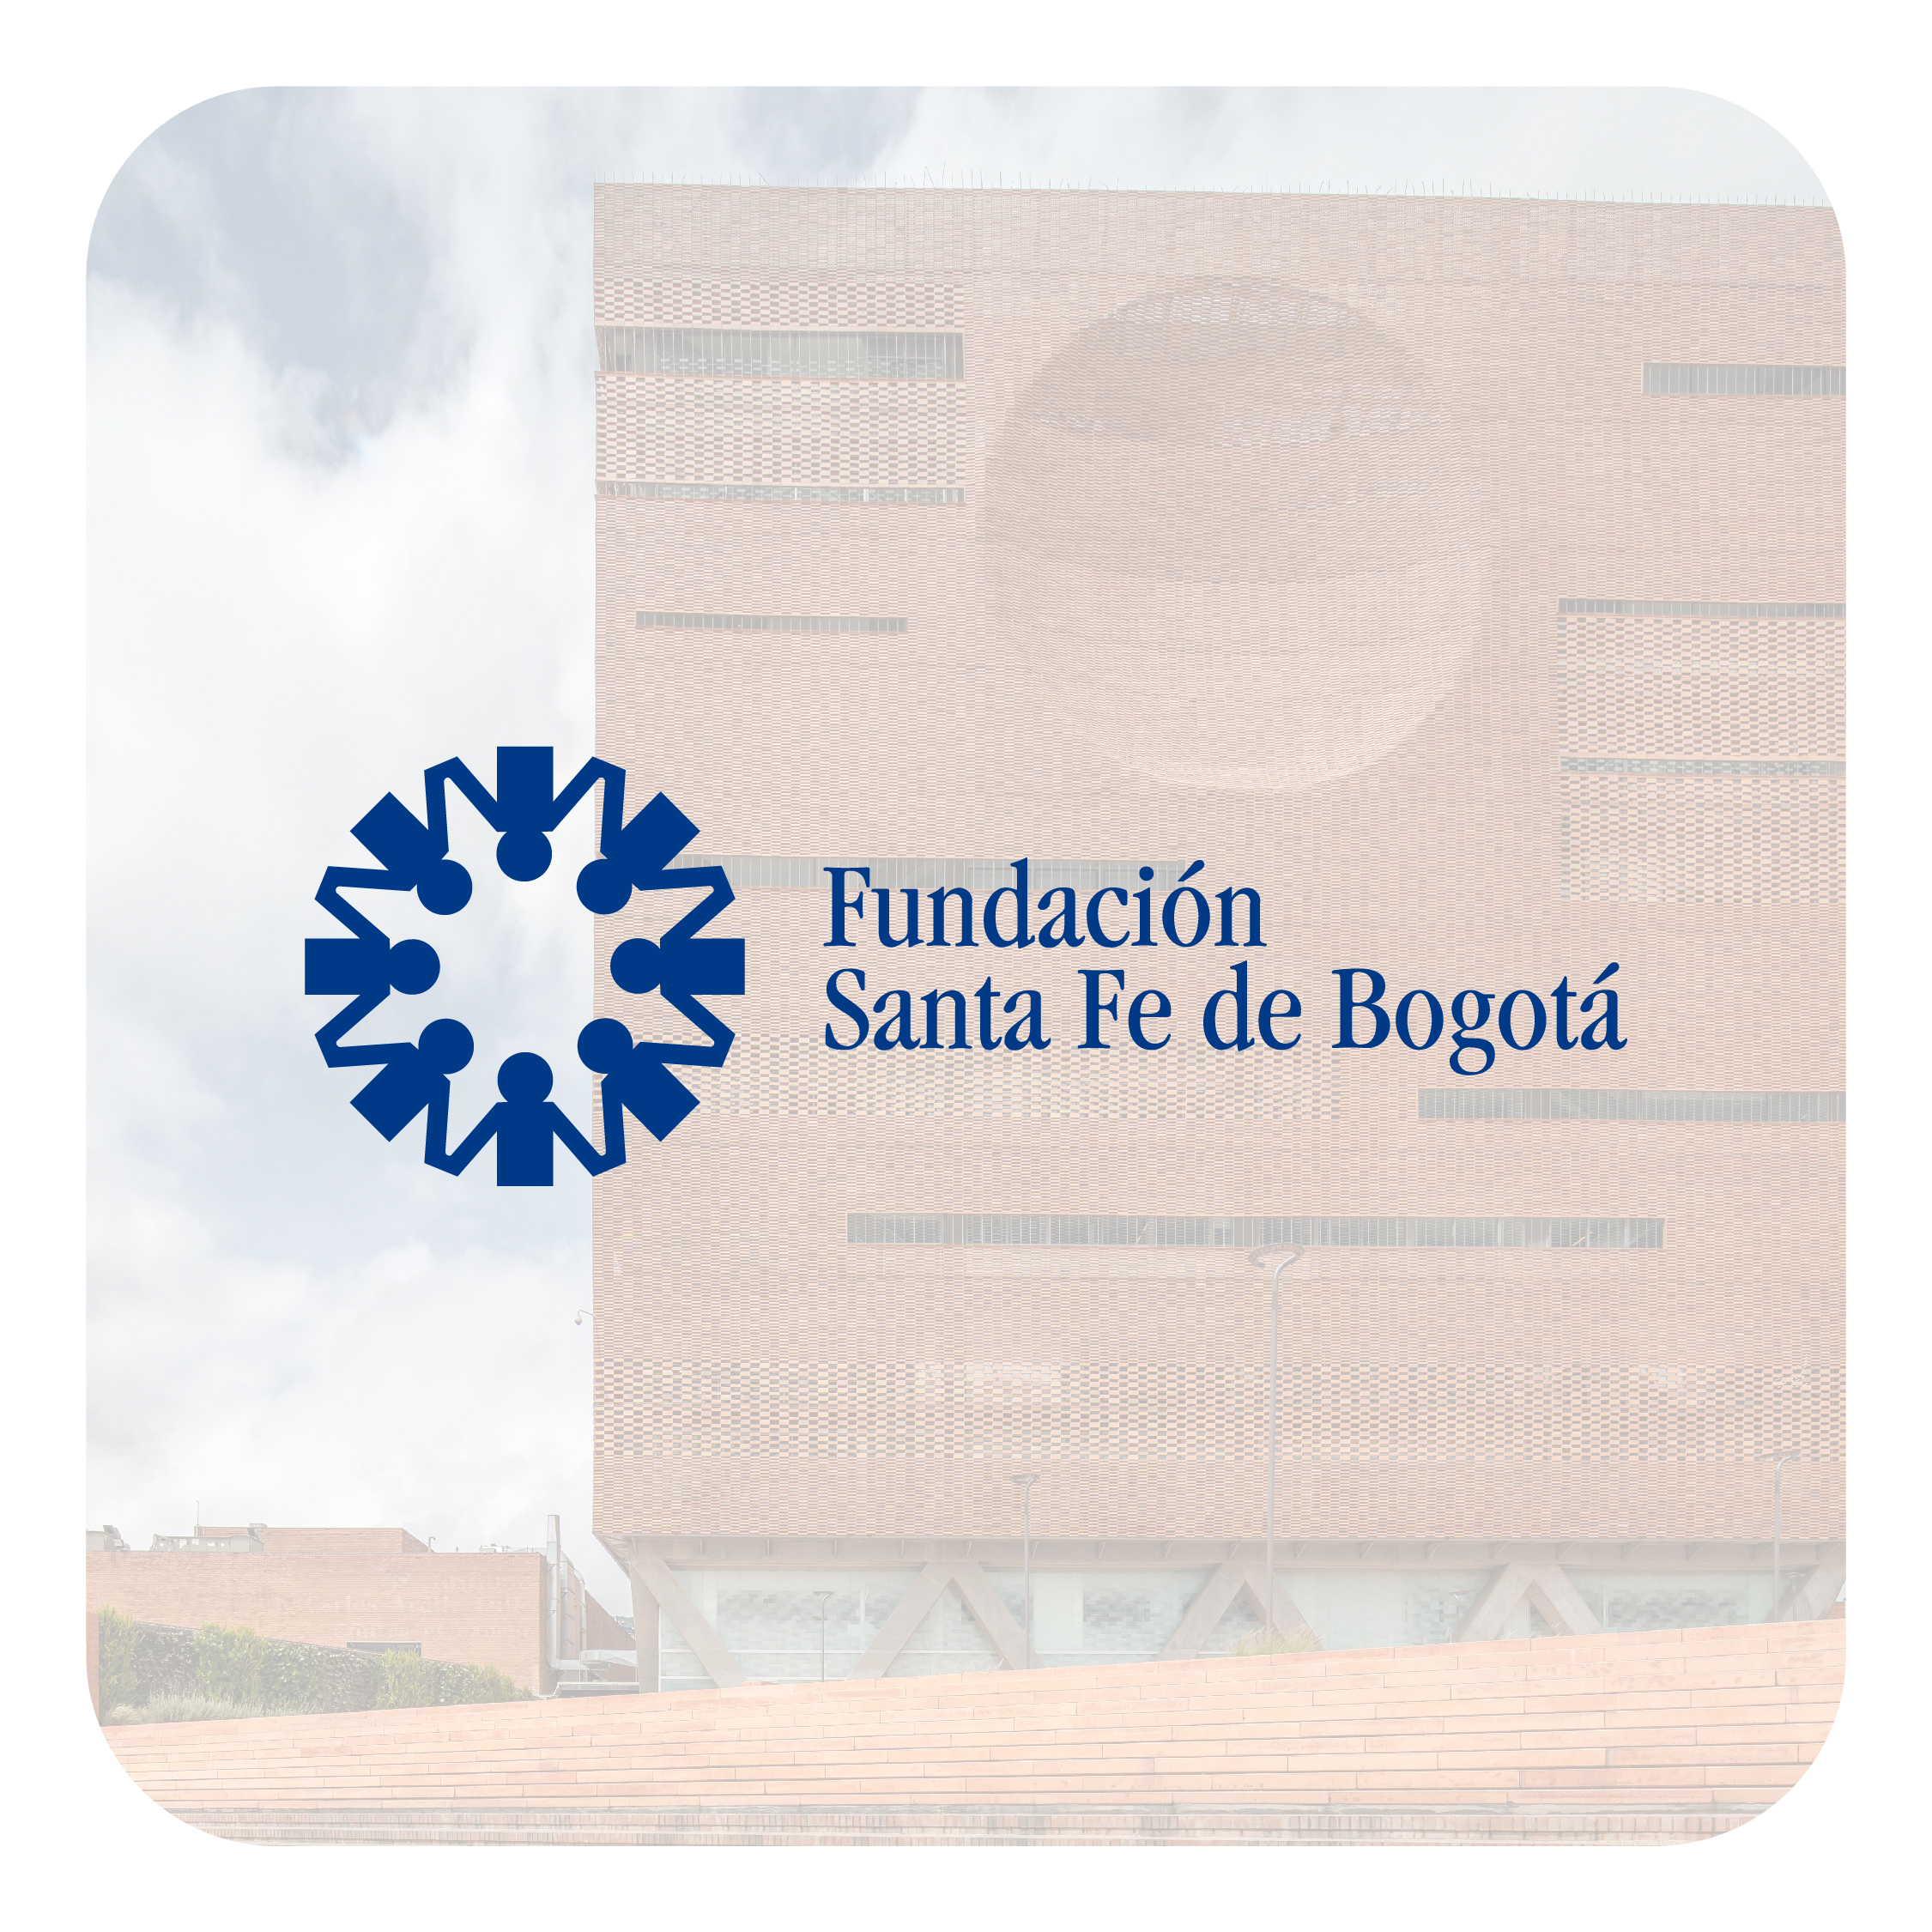 WorldWide Seguros incorpora a su red directa a la Fundación Santa Fe de Bogotá, referente de calidad en tratamientos médicos en Colombia 